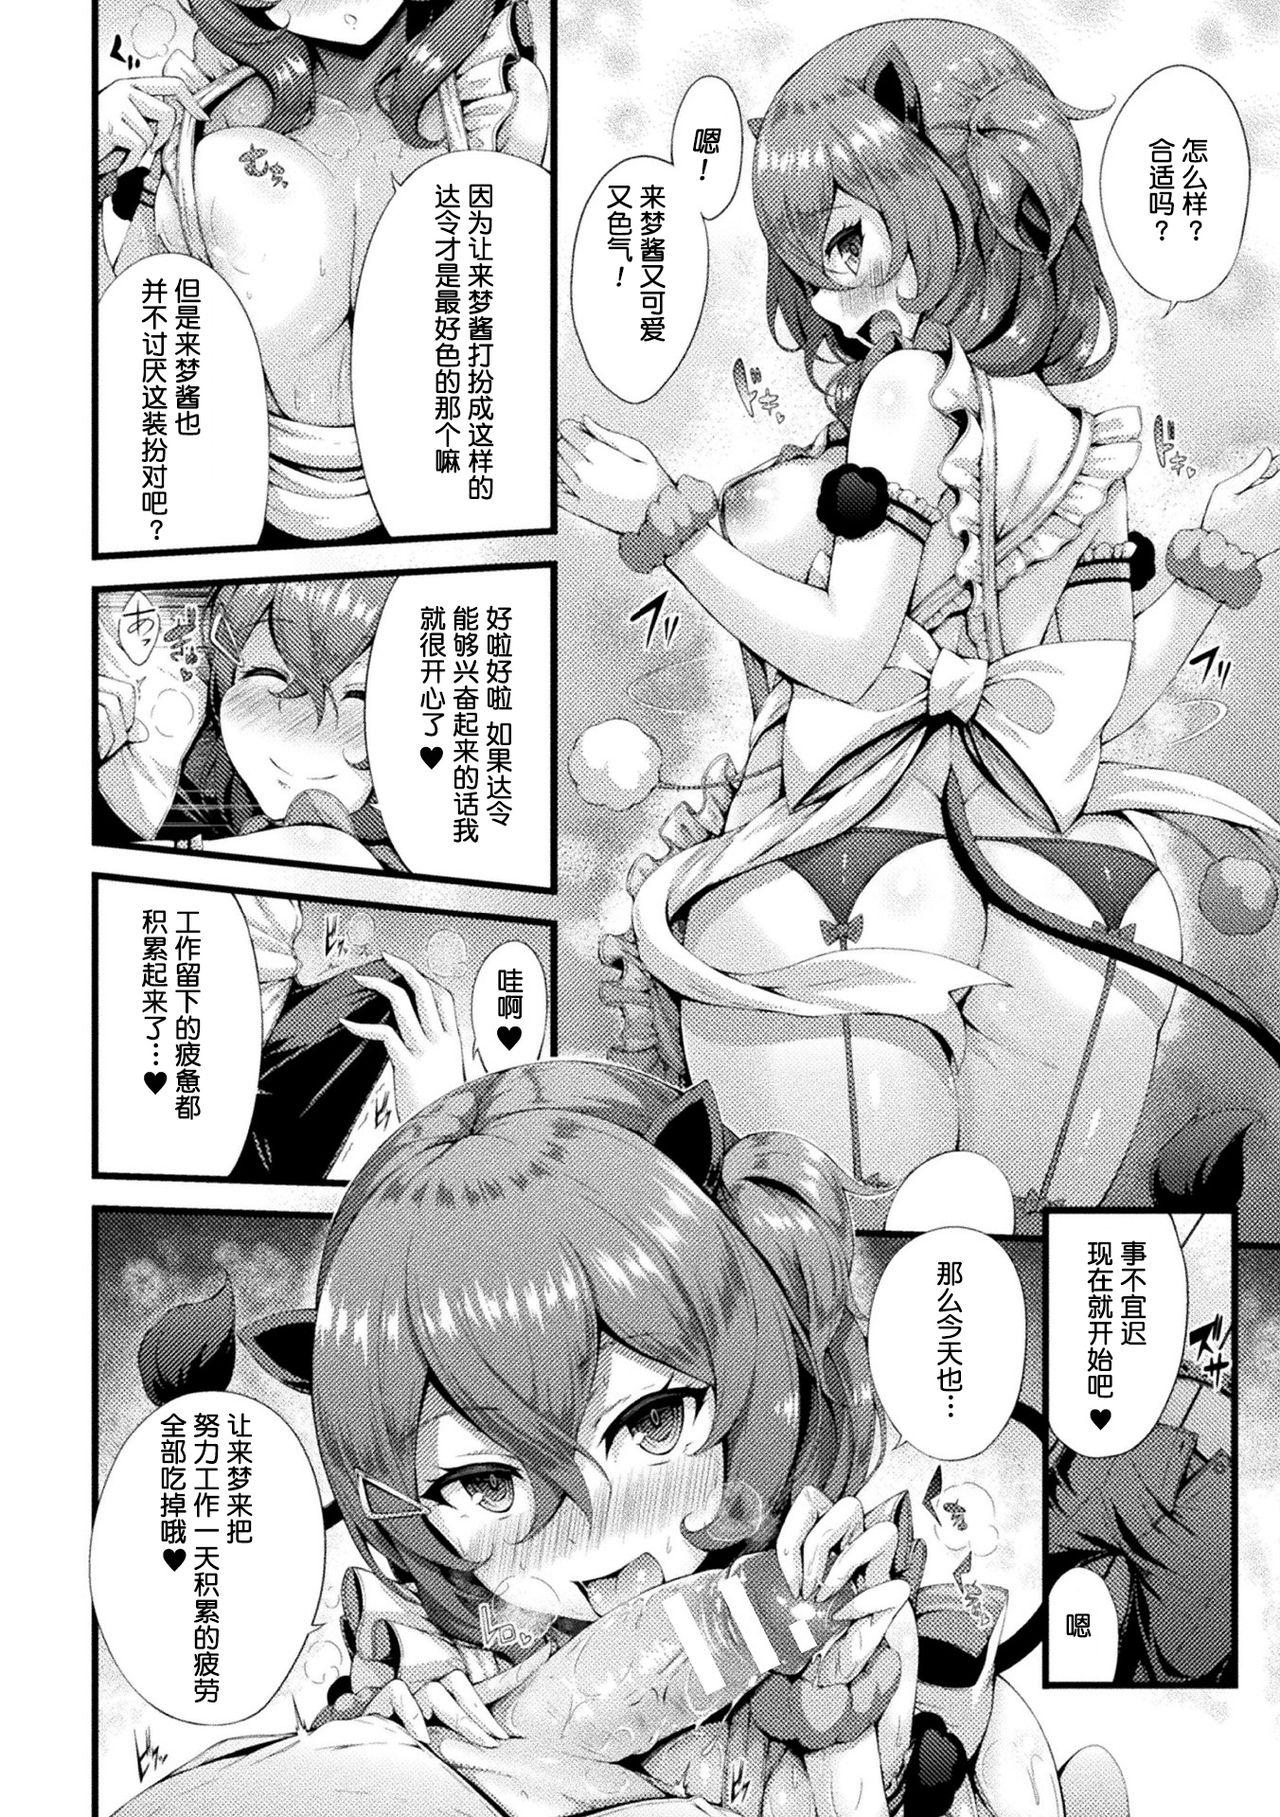 Peitos Yumekui Lovers Dick Sucking - Page 3